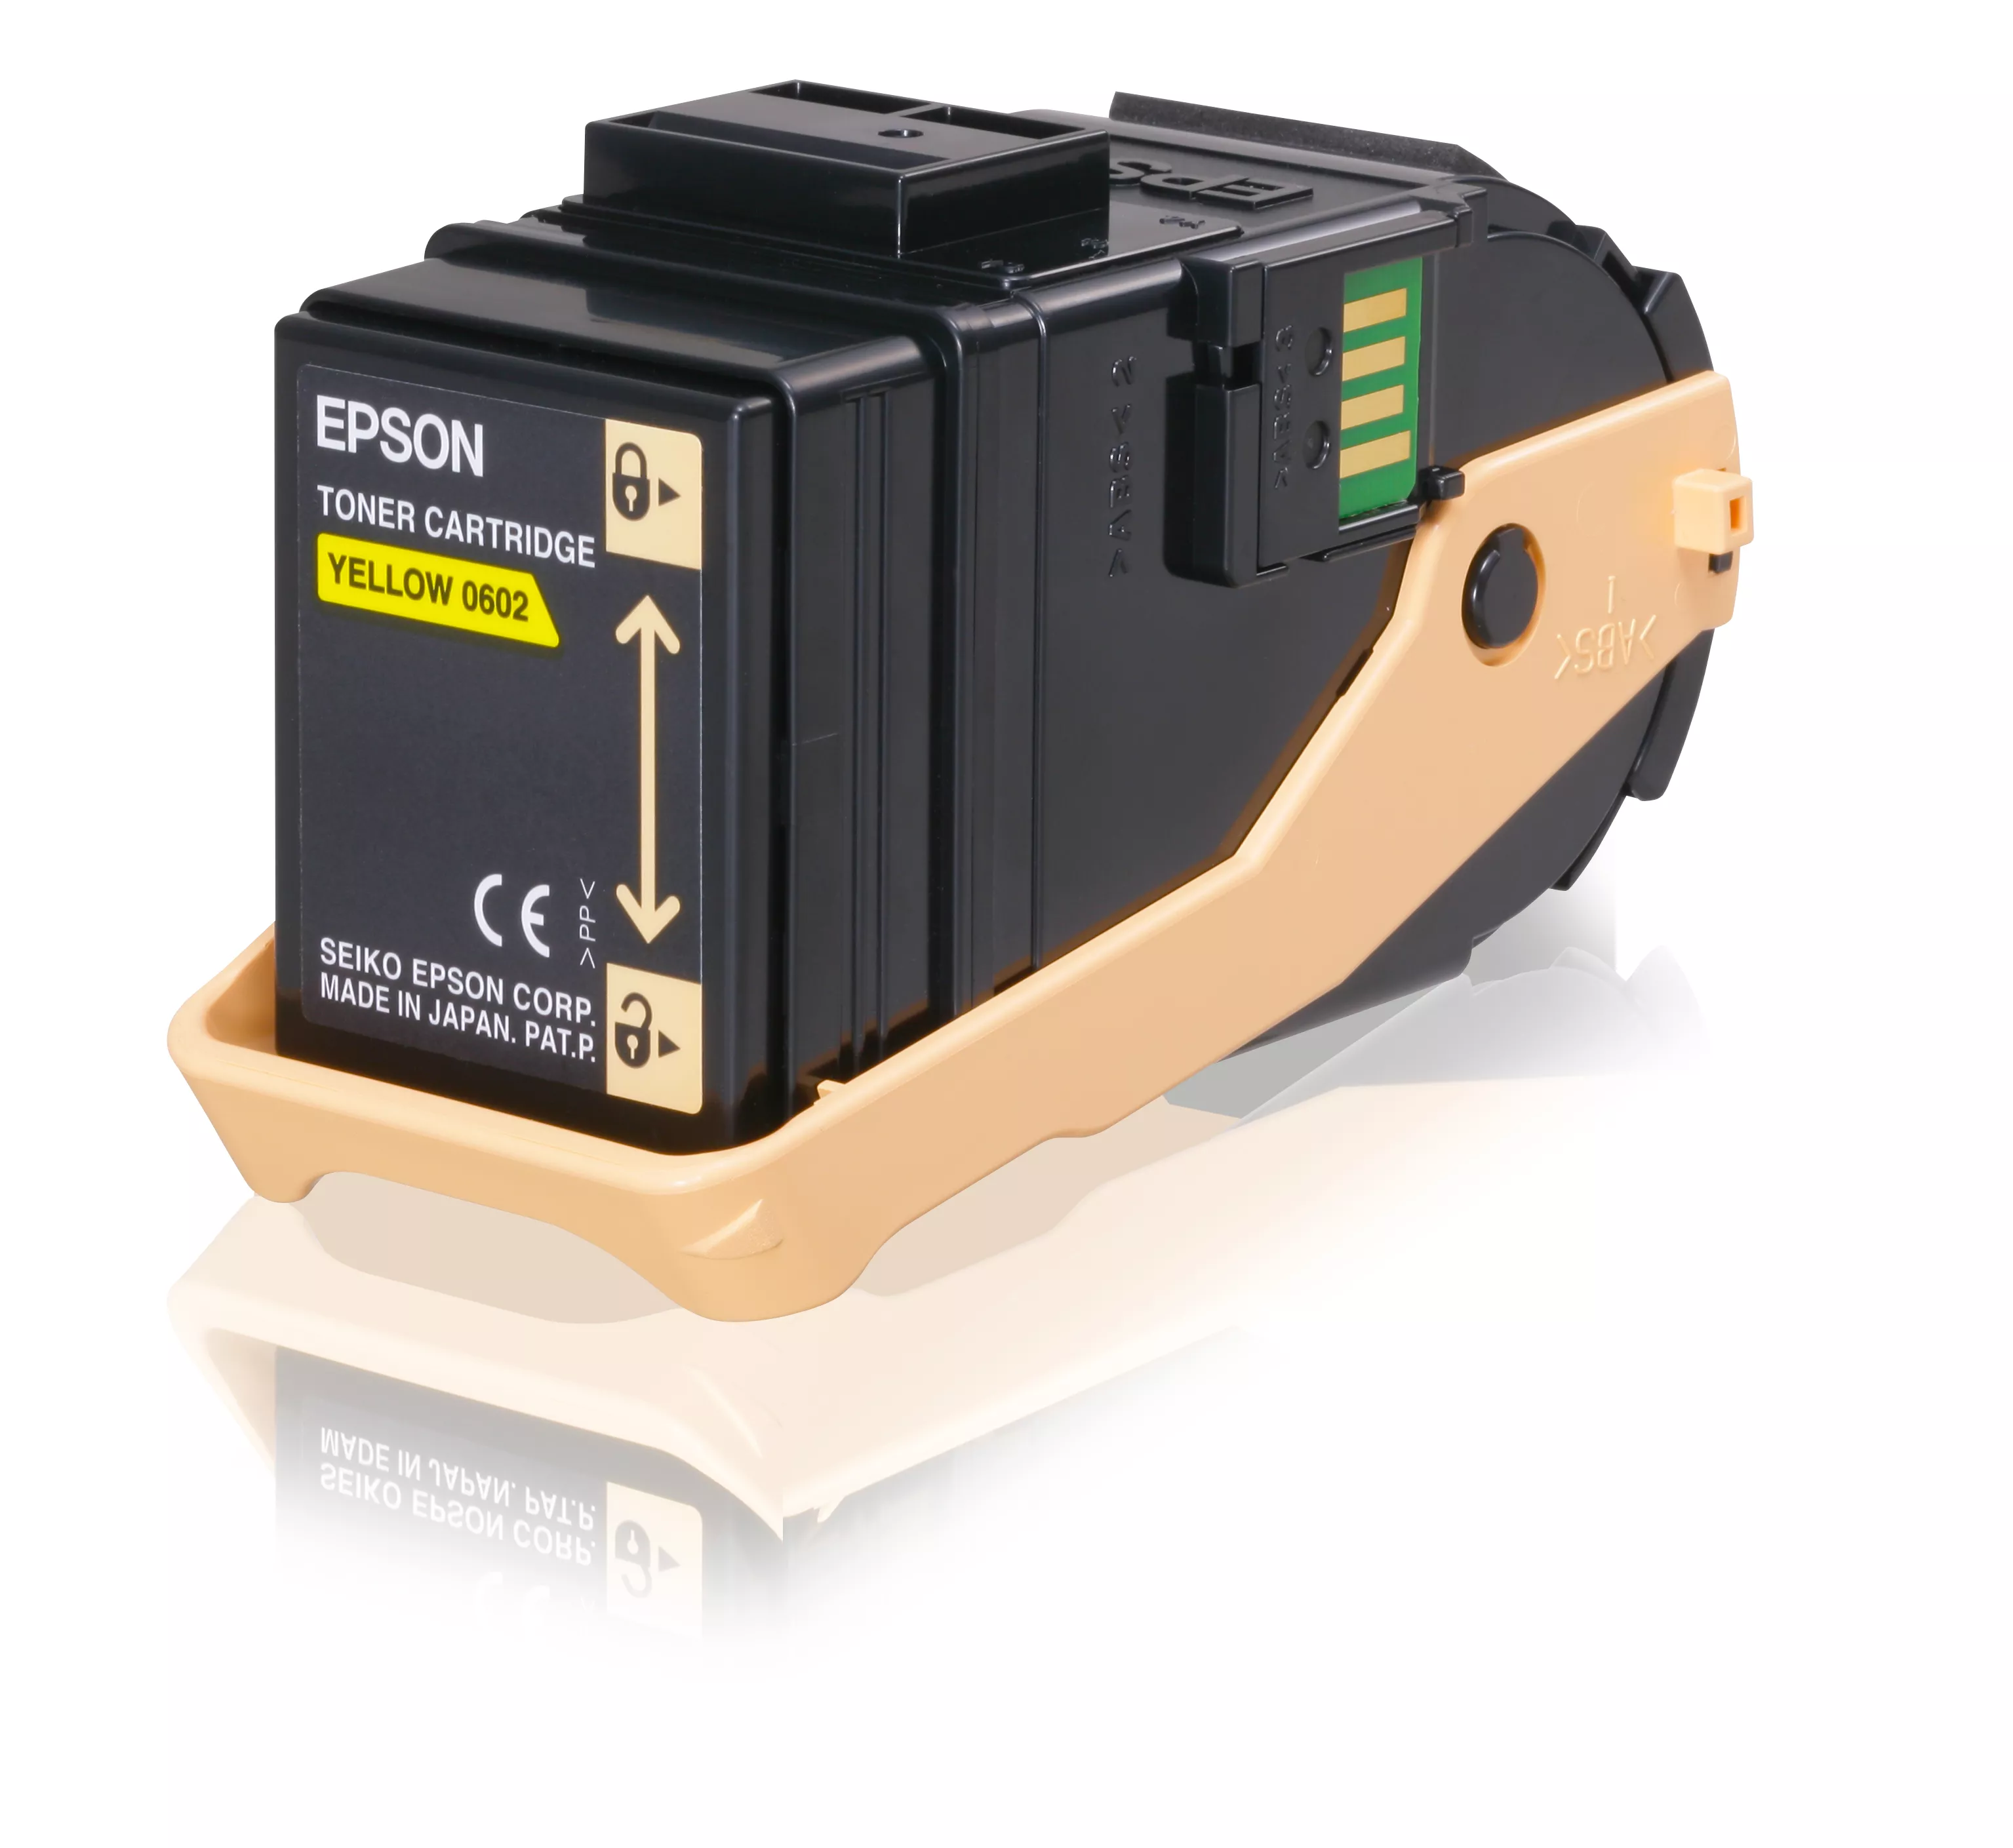 Achat EPSON AL-C9300N cartouche de toner jaune capacité et autres produits de la marque Epson